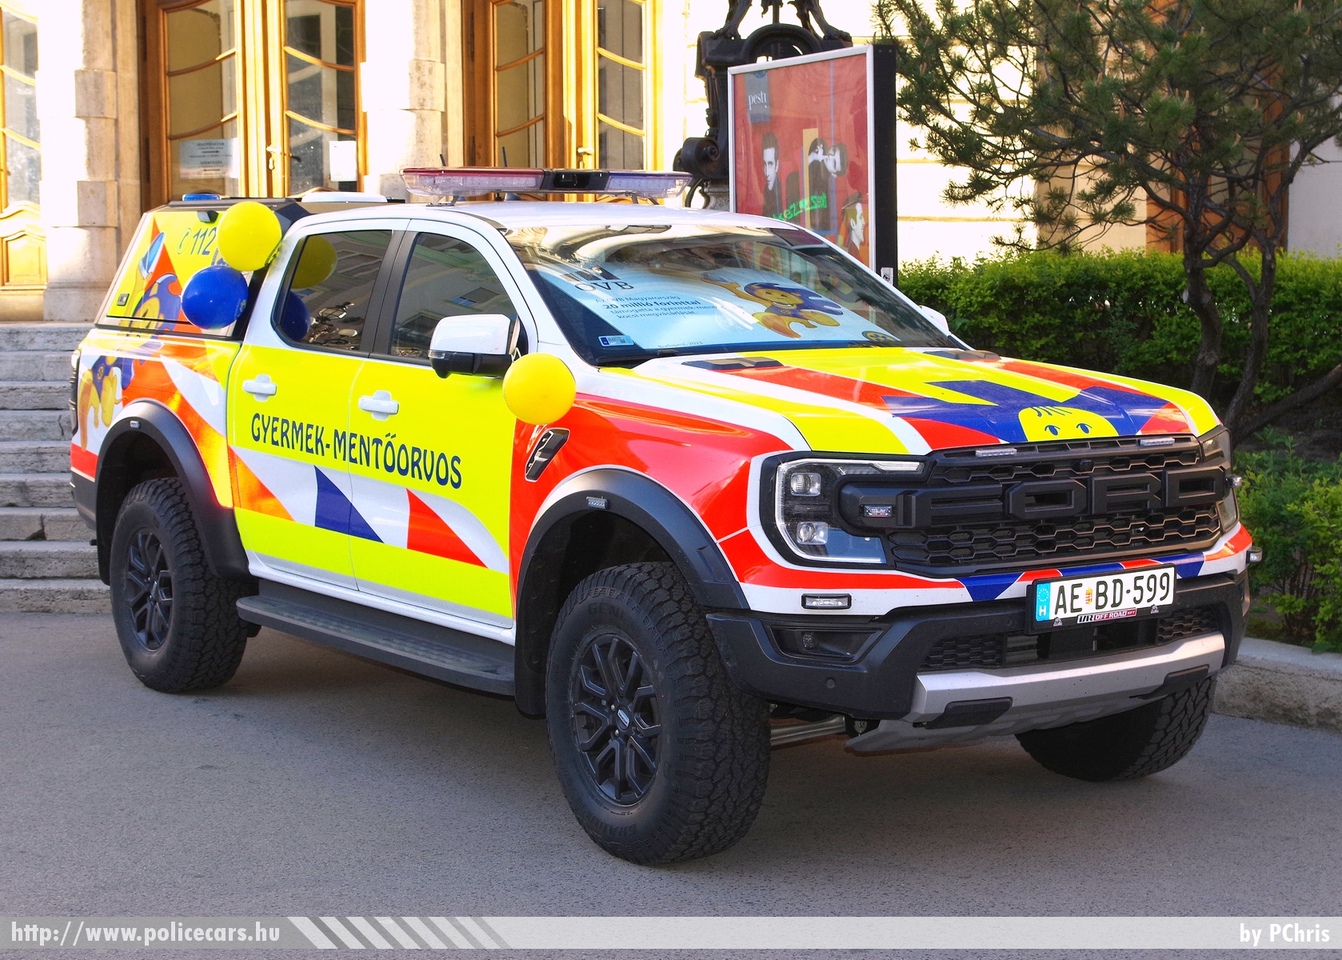 Ford Ranger Raptor, gyermek-mentőorvosi kocsi, Szent Márton Gyermekmentő Szolgálat Közhasznú Alapítvány, fotó: PChris
Keywords: mentő magyar Magyarország mentőautó ambulance Hungary hungarian AEBD-599 MOK